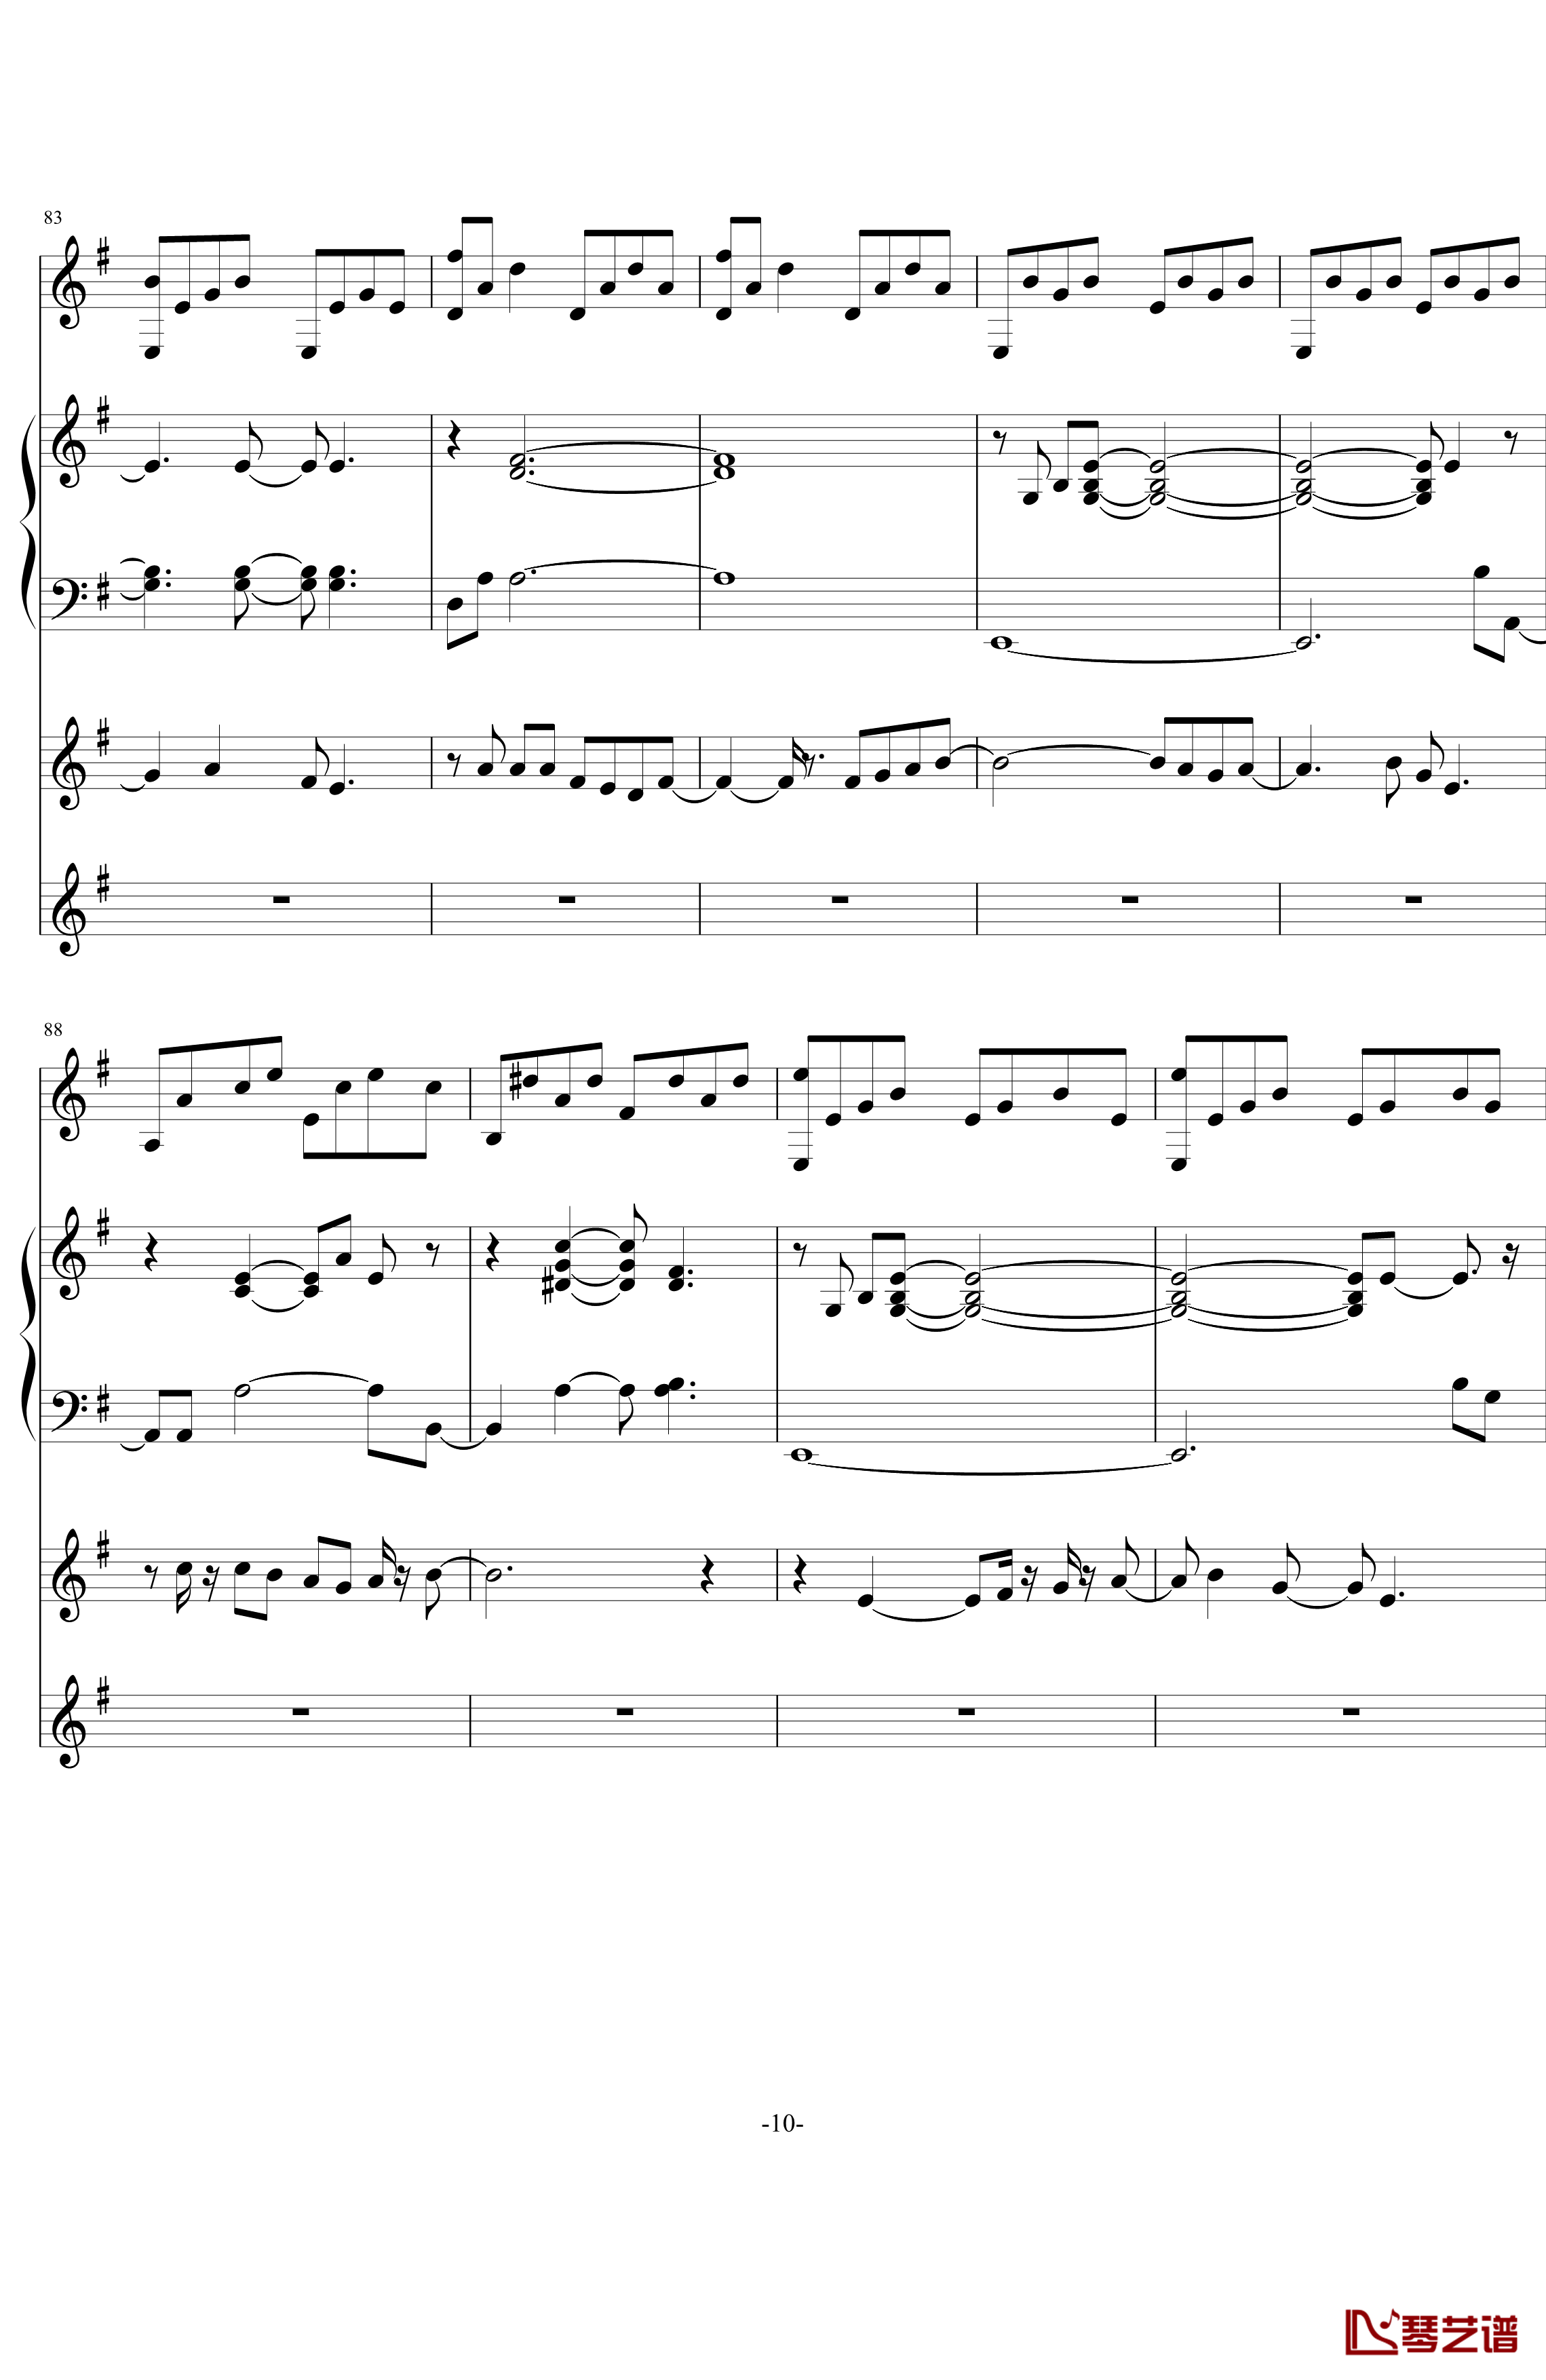 中提琴协奏版钢琴谱-含有钢琴独奏-老奠10